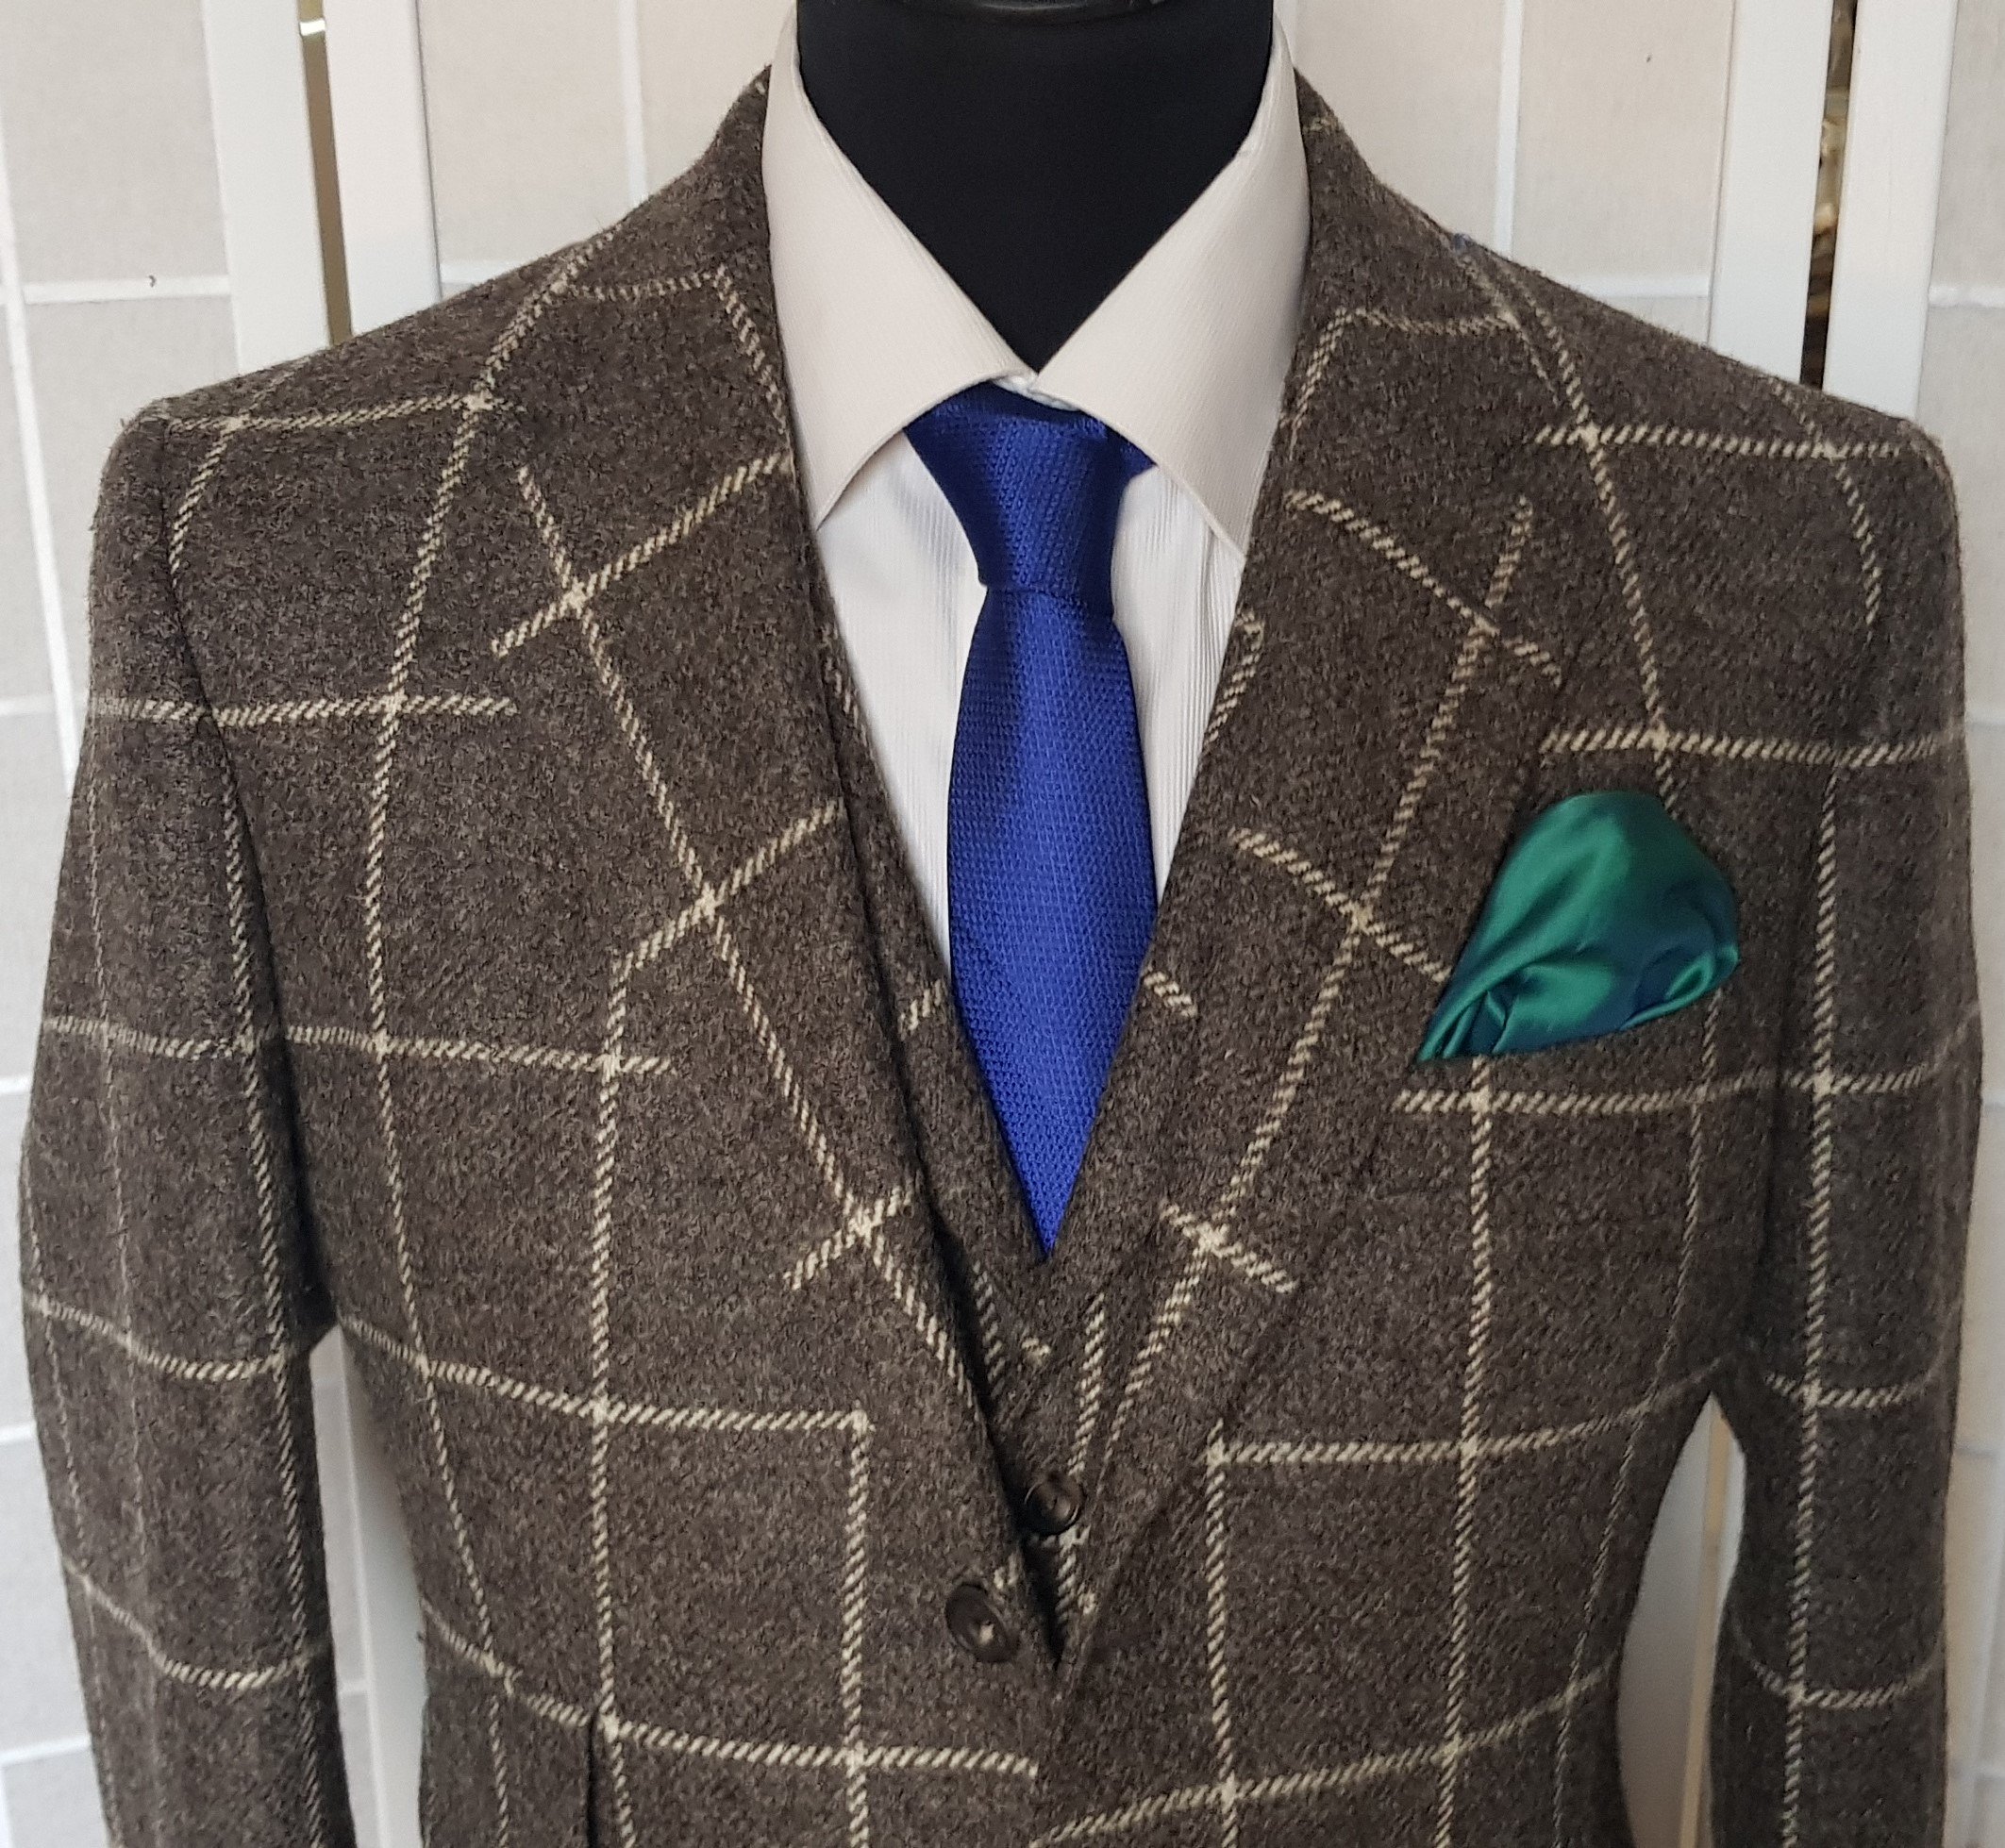 Jacket and waistcoat in undyed British yarn tweed (6).jpg